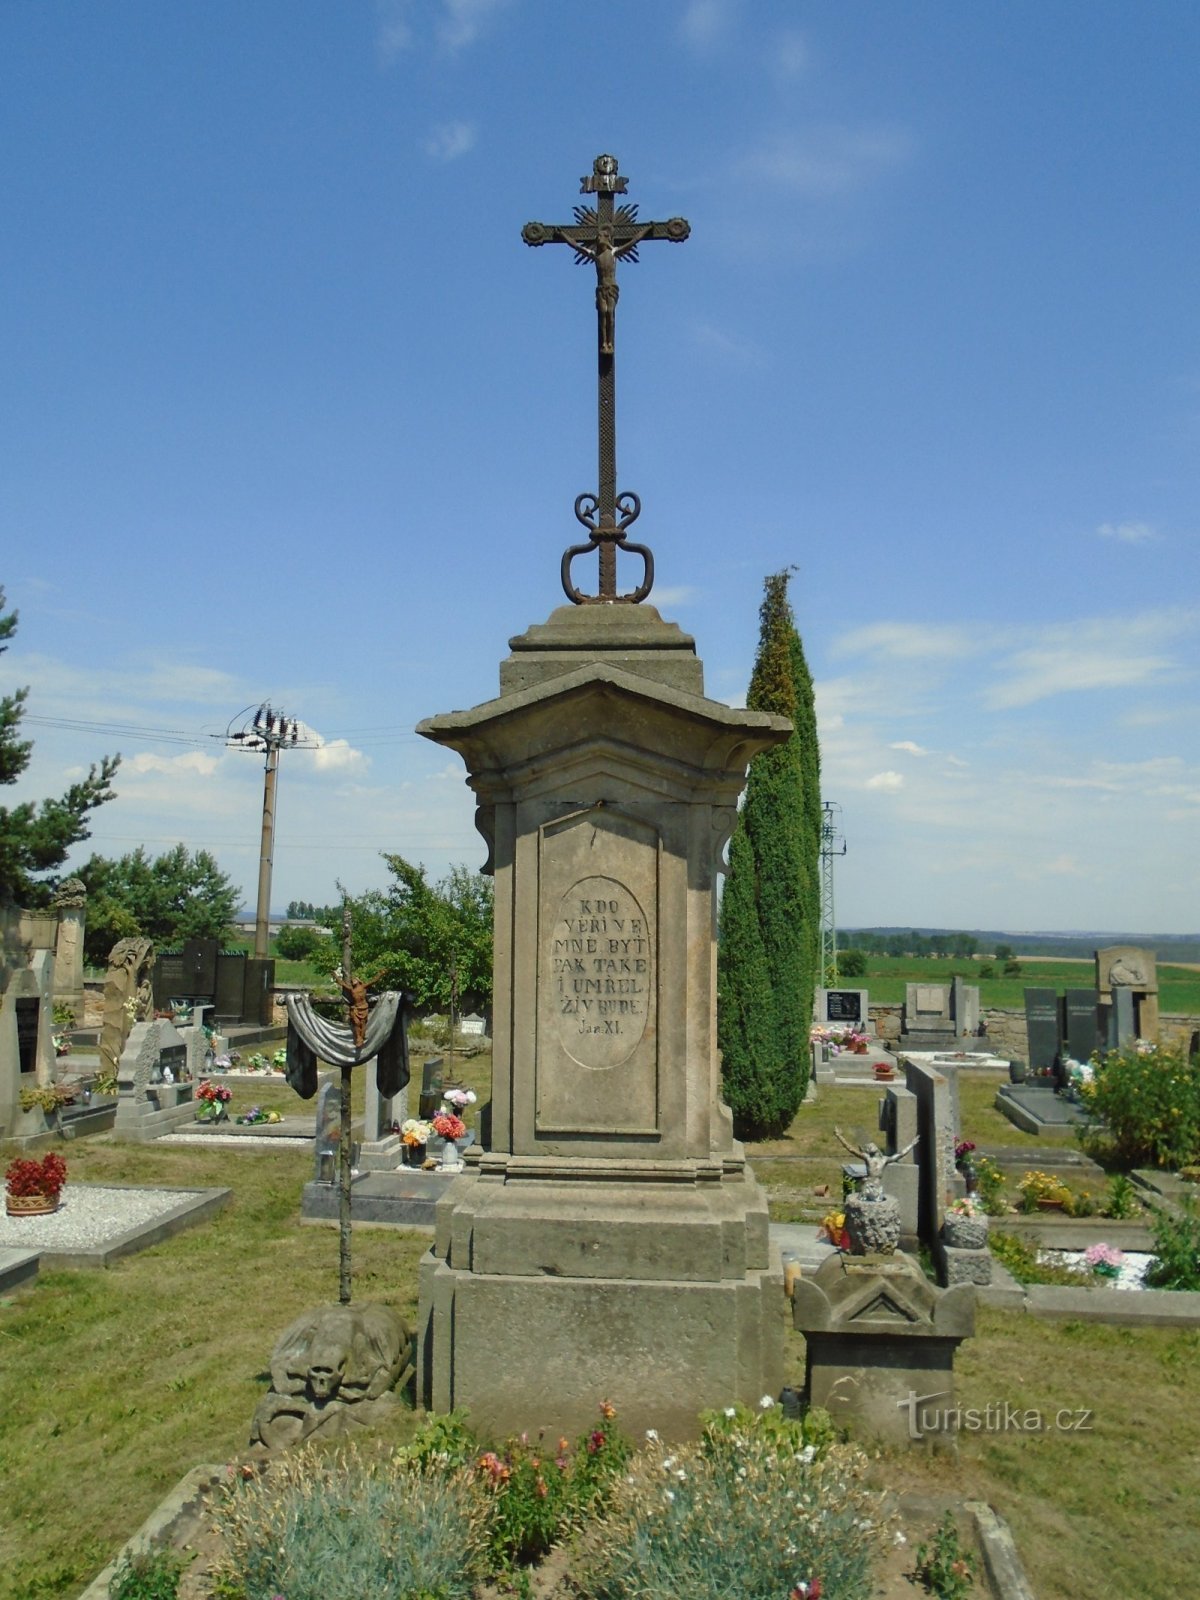 Croix de cimetière (Hořiněves, 5.7.2018 juillet XNUMX)